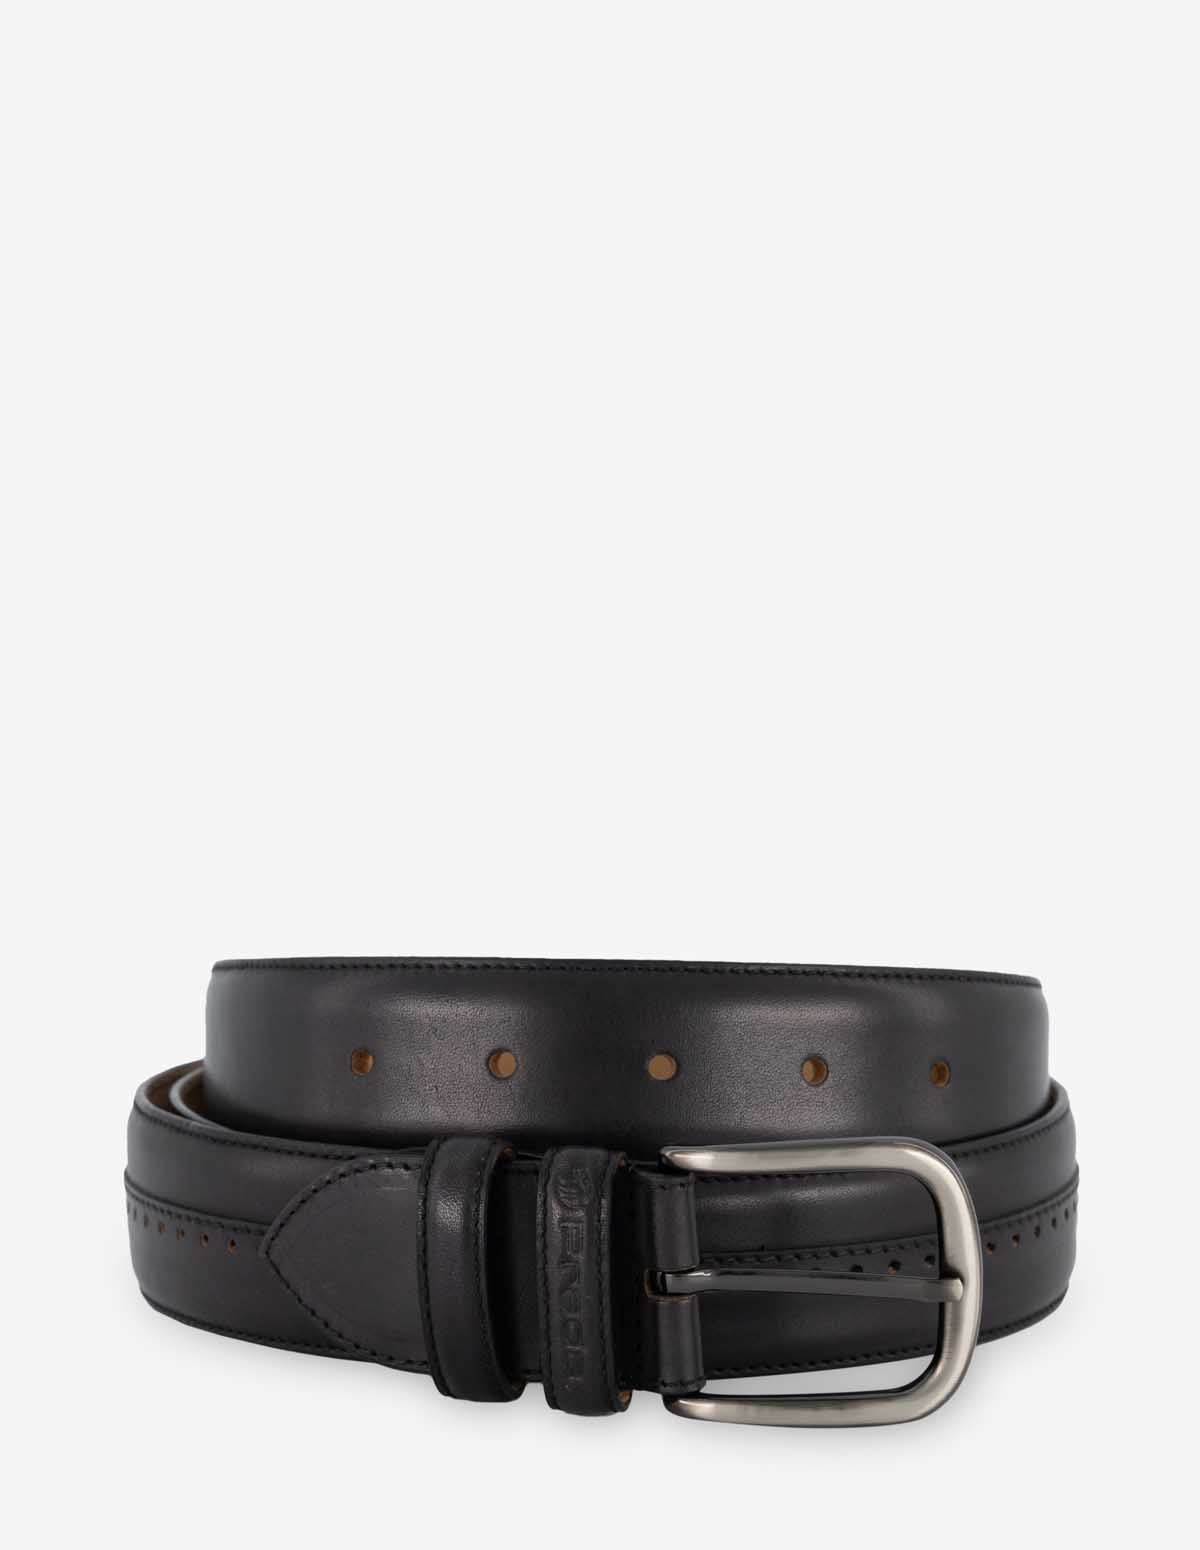 Cinturón en piel color negro con picado para hombre